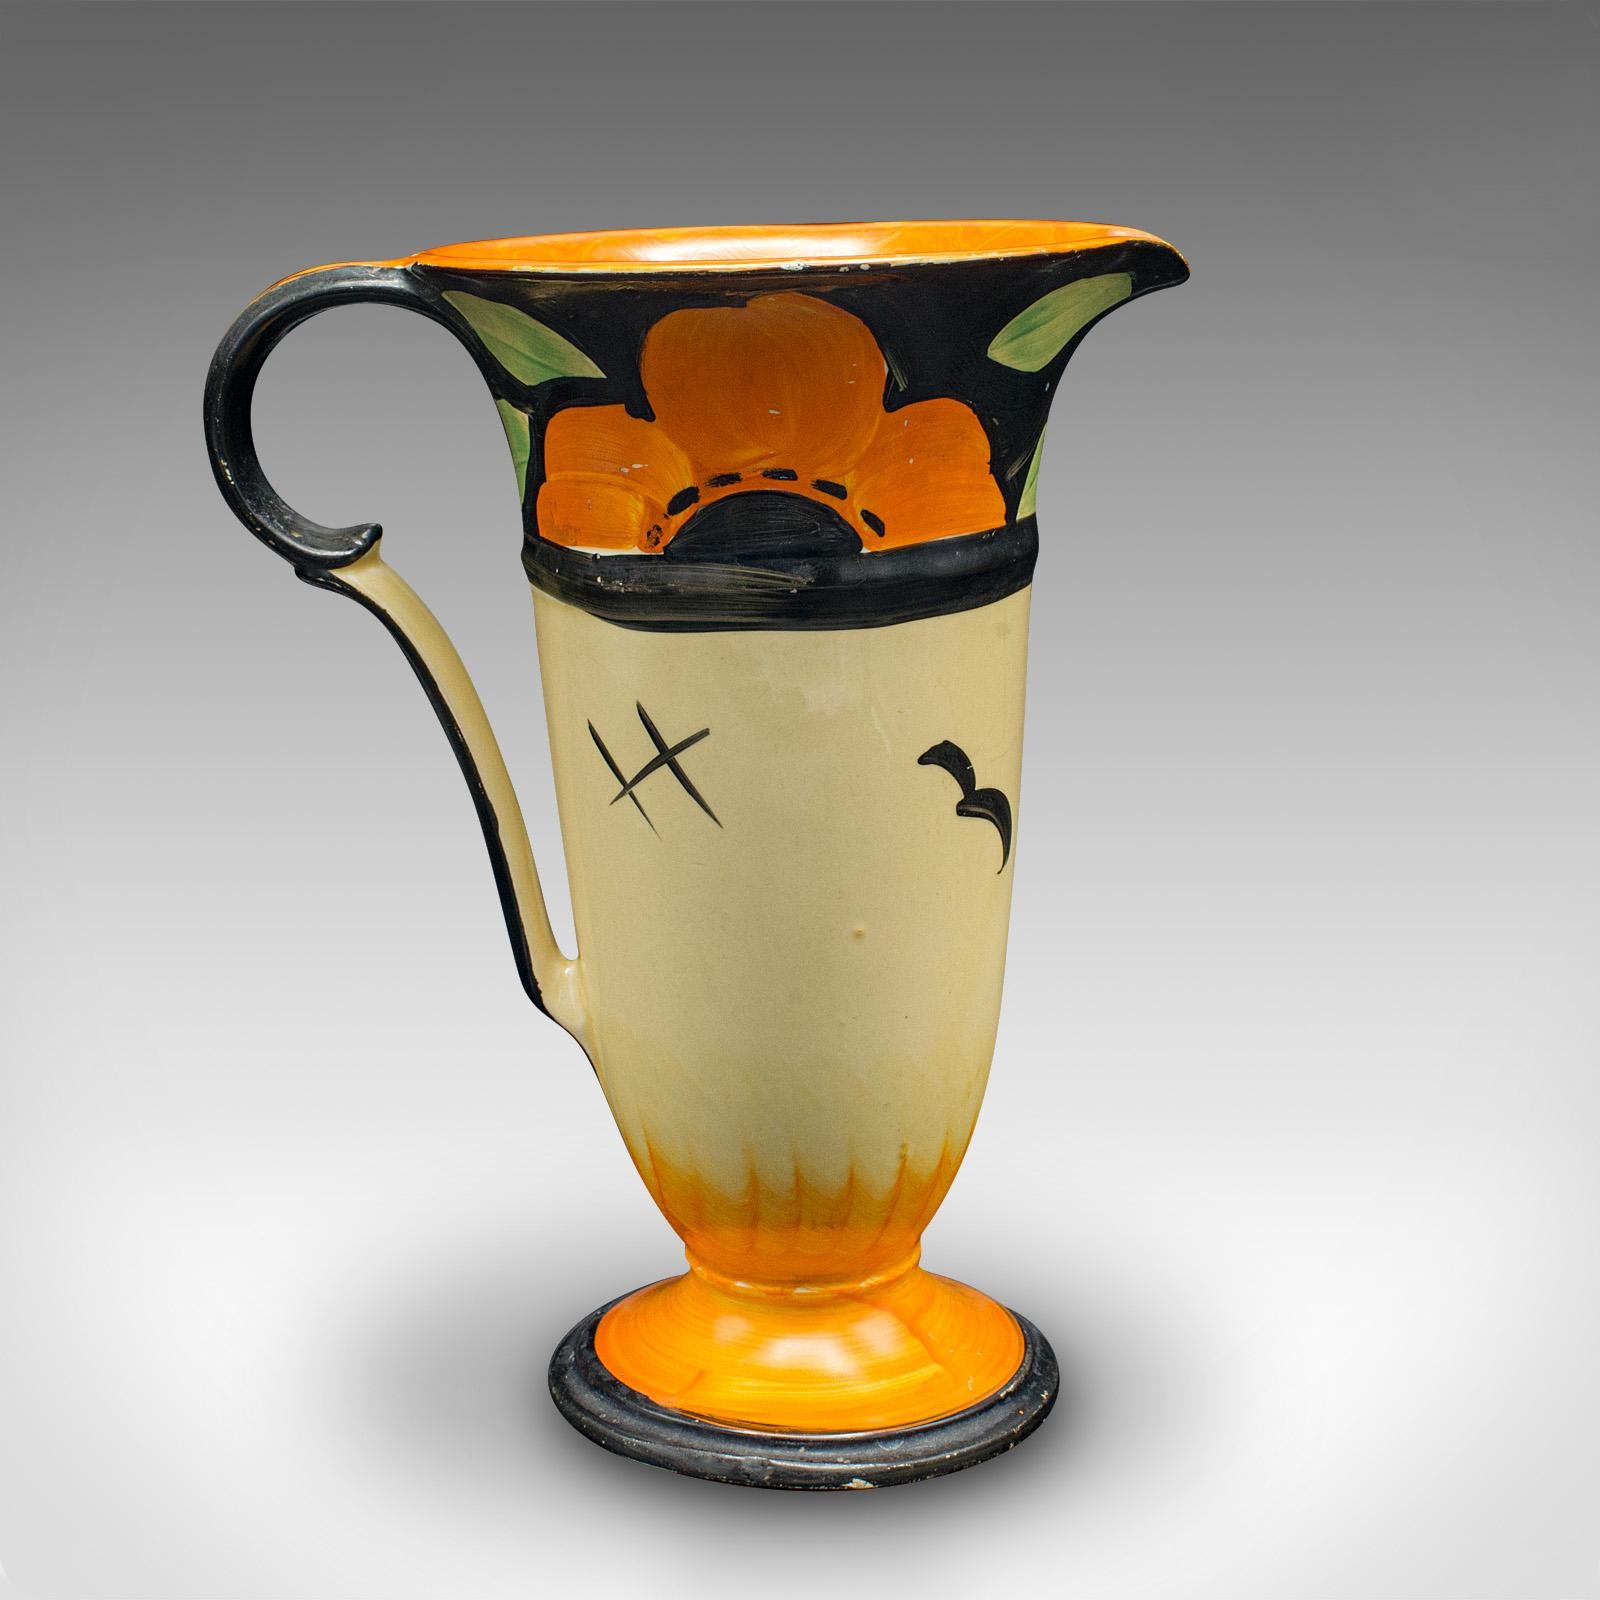 Dies ist eine alte Servierkanne. Ein englischer Keramikausgießer im Art-déco-Stil aus dem frühen 20. Jahrhundert, um 1930.

Lebendiger und ansprechender Krug mit wunderbarem Art-déco-Geschmack
Mit wünschenswerter Alterspatina und in gutem